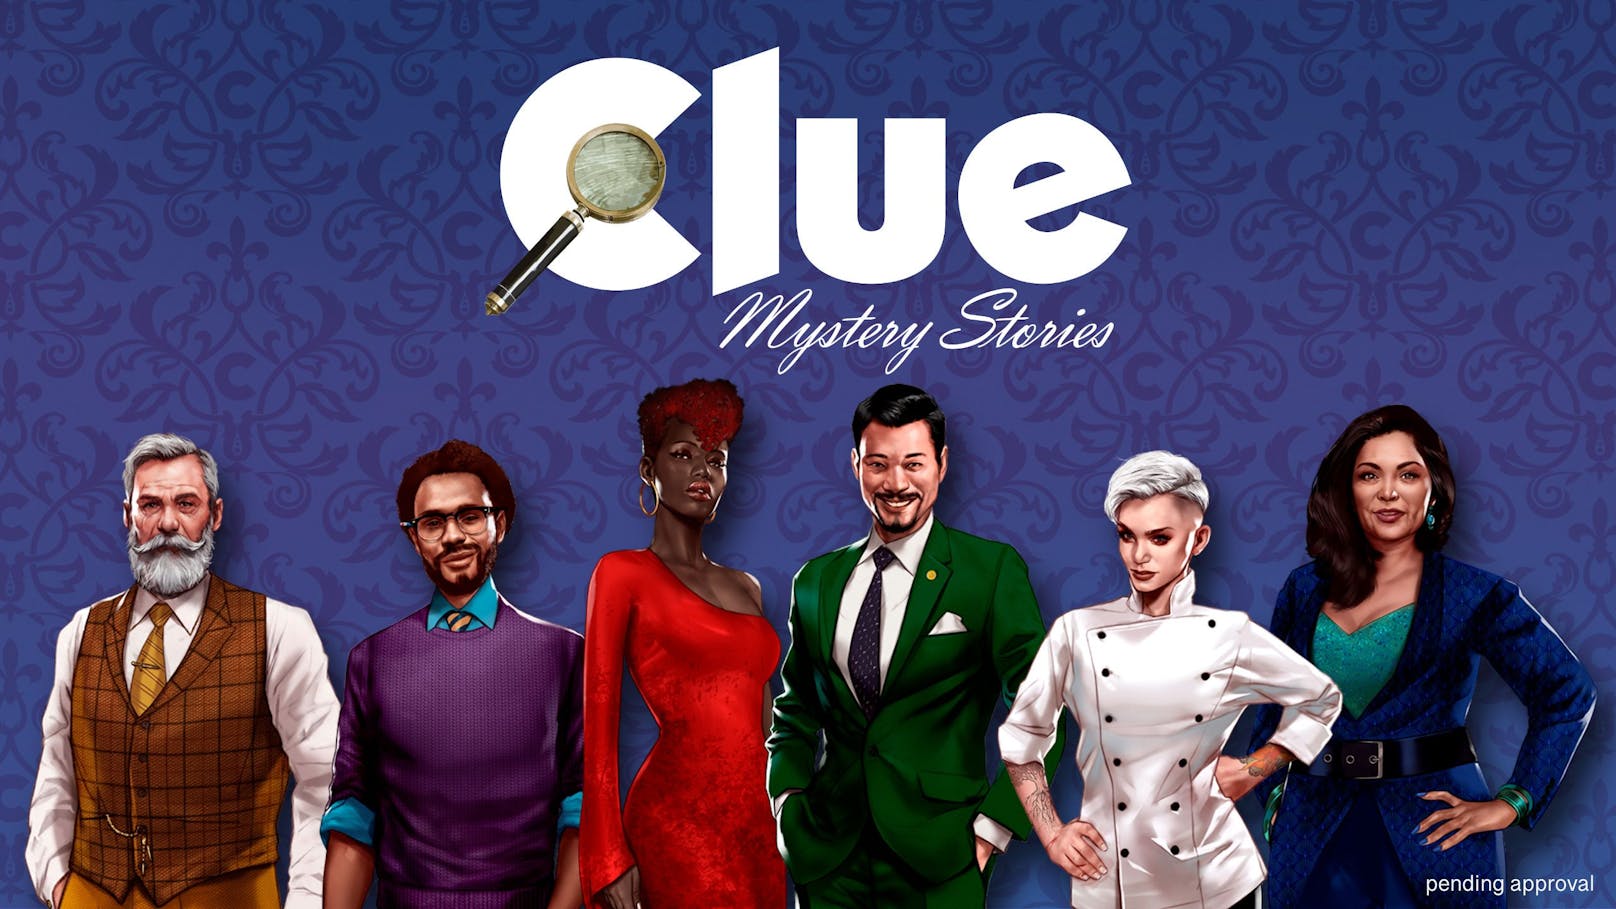 Gamebook Studio kündigt "Clue/Cluedo: Mystery Stories" an – die erste narrative Crime-Simulation des beliebten Hasbro-Brettspiels.